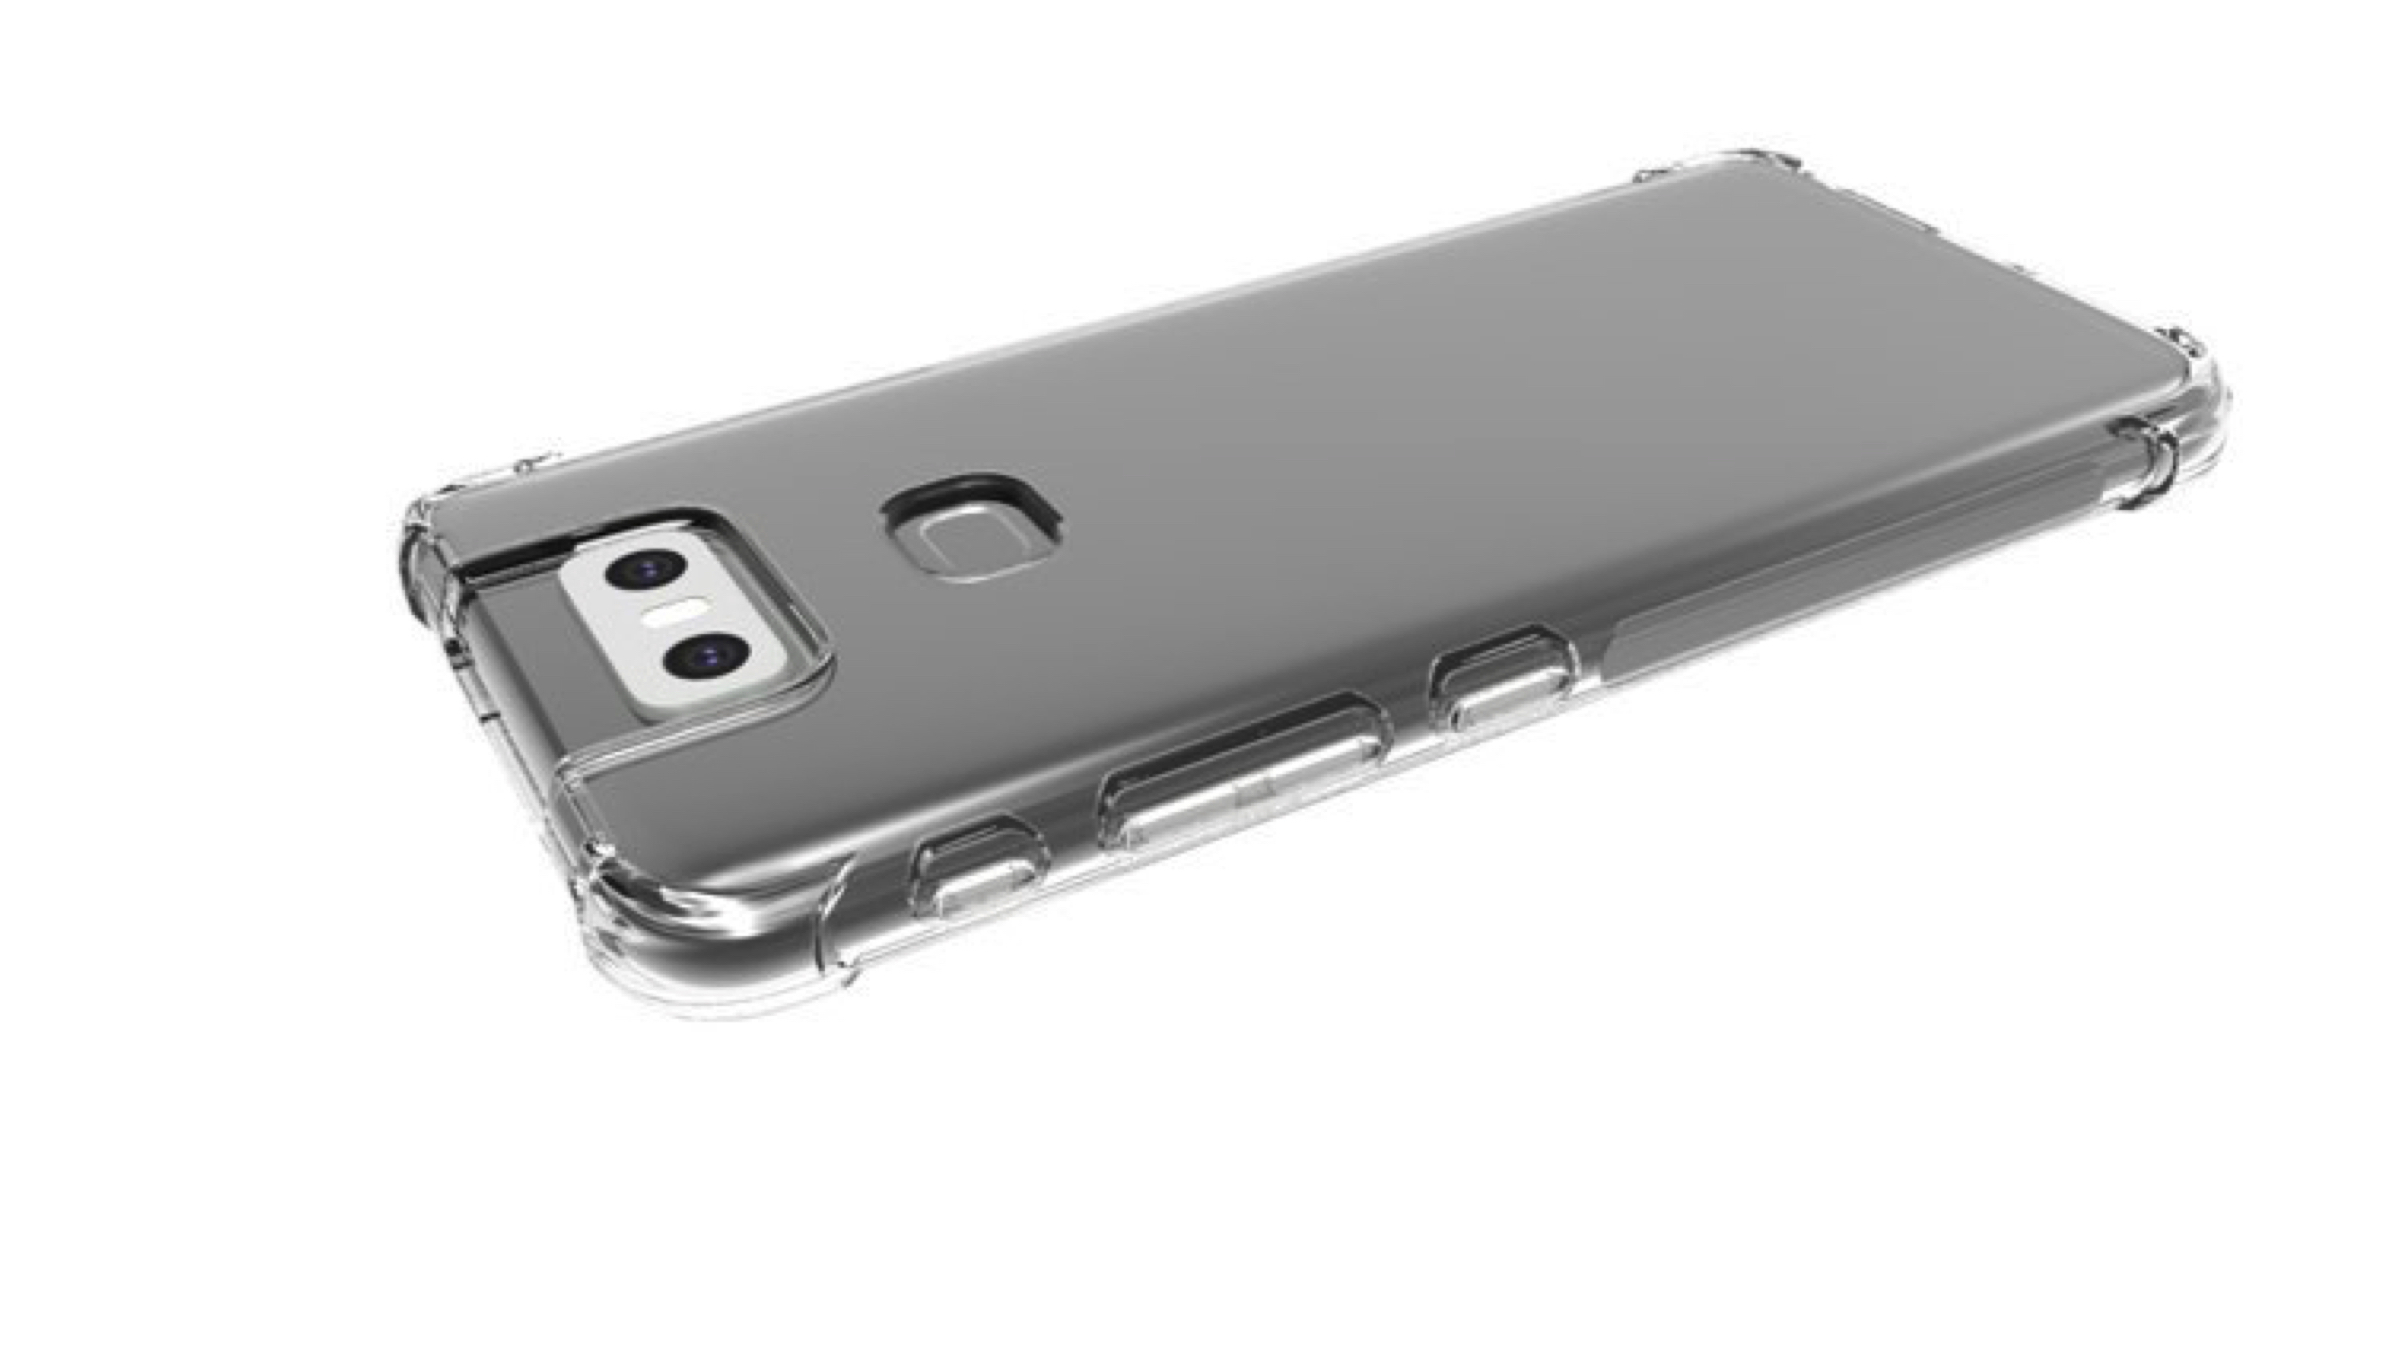 Asus Zenfone 6 Case Renders